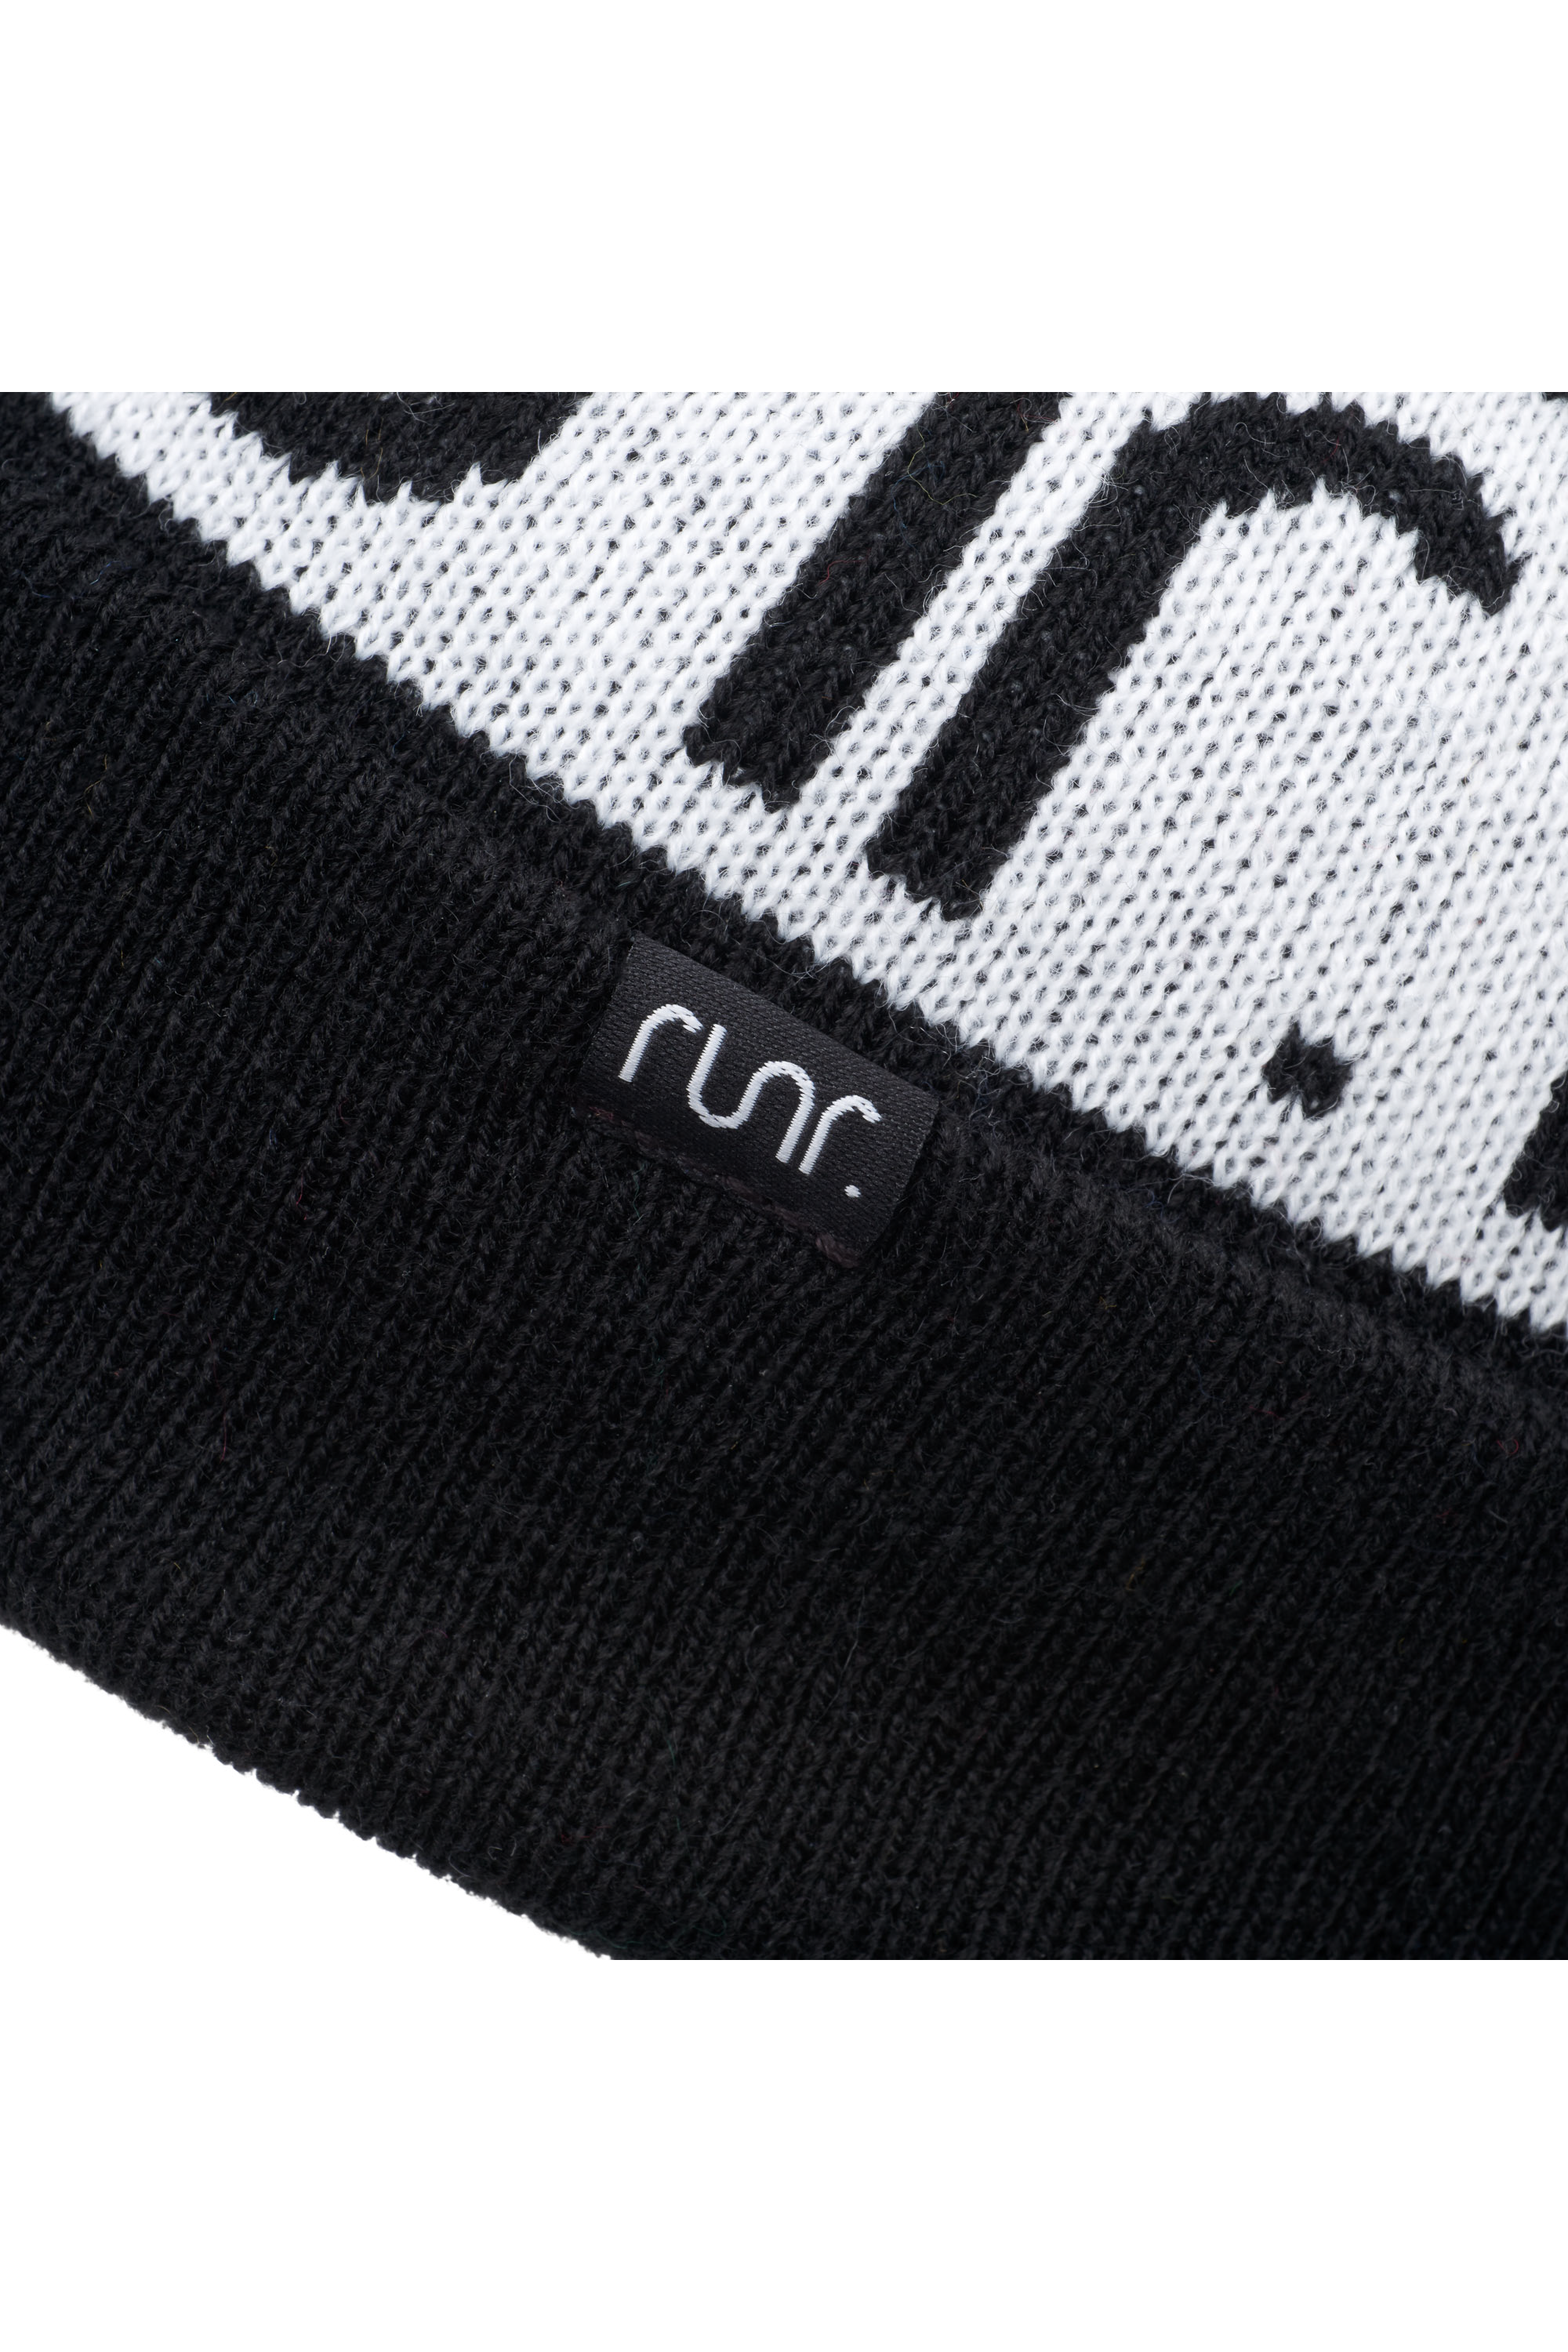 Runr Nordic Bobble Hat - Black & White